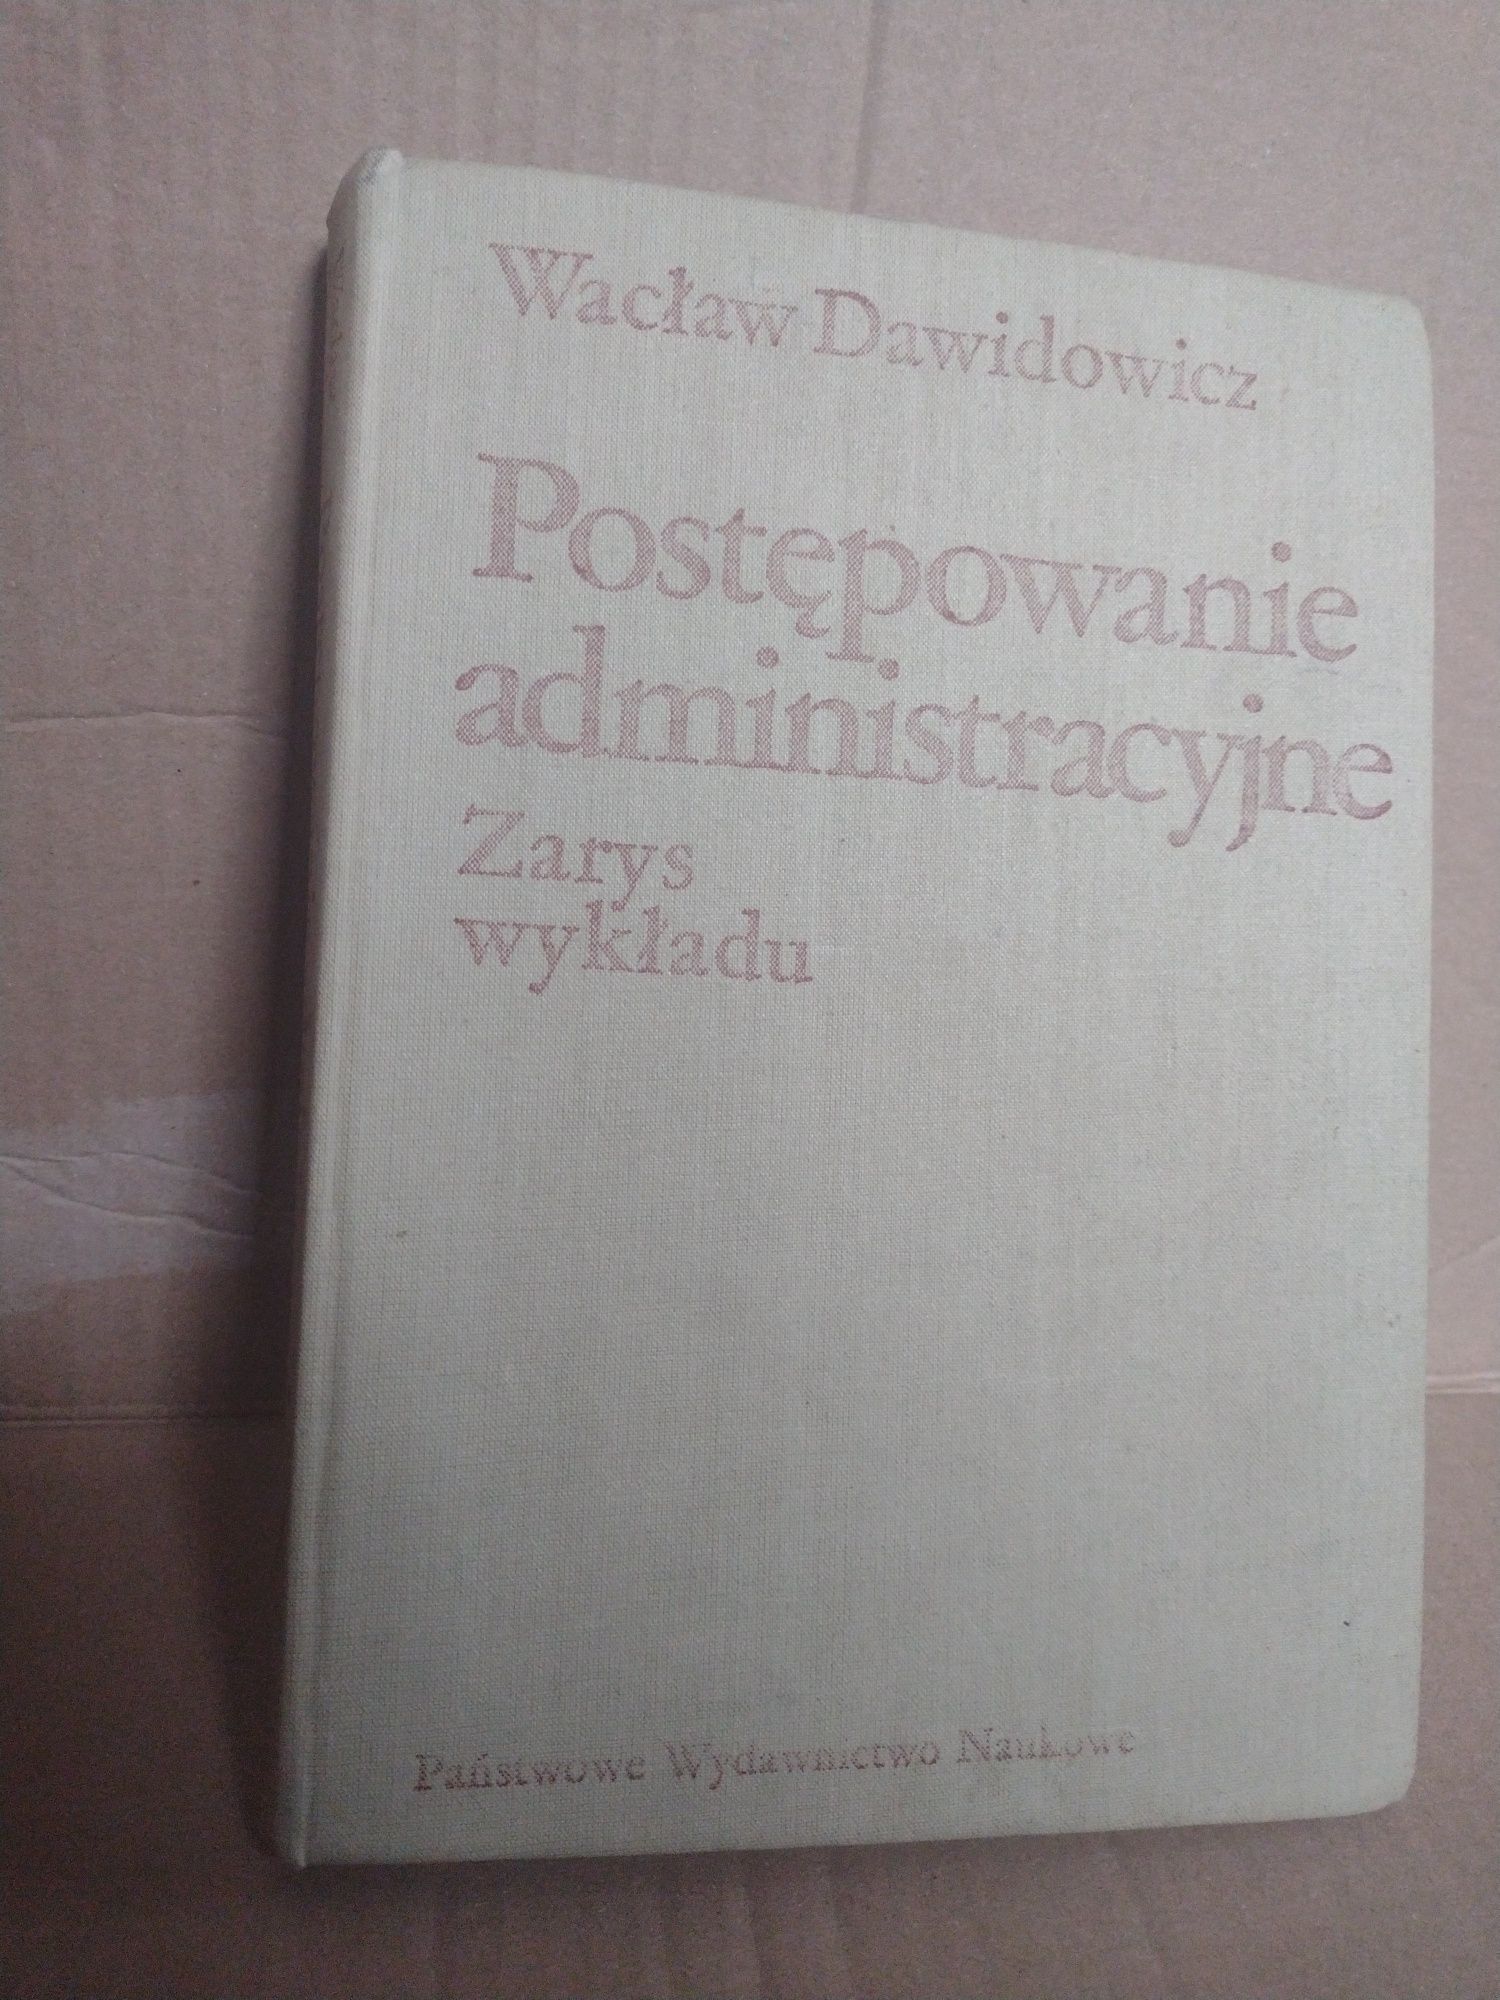 Postępowanie administracyjne zarys wykładu Wacław Dawidowicz